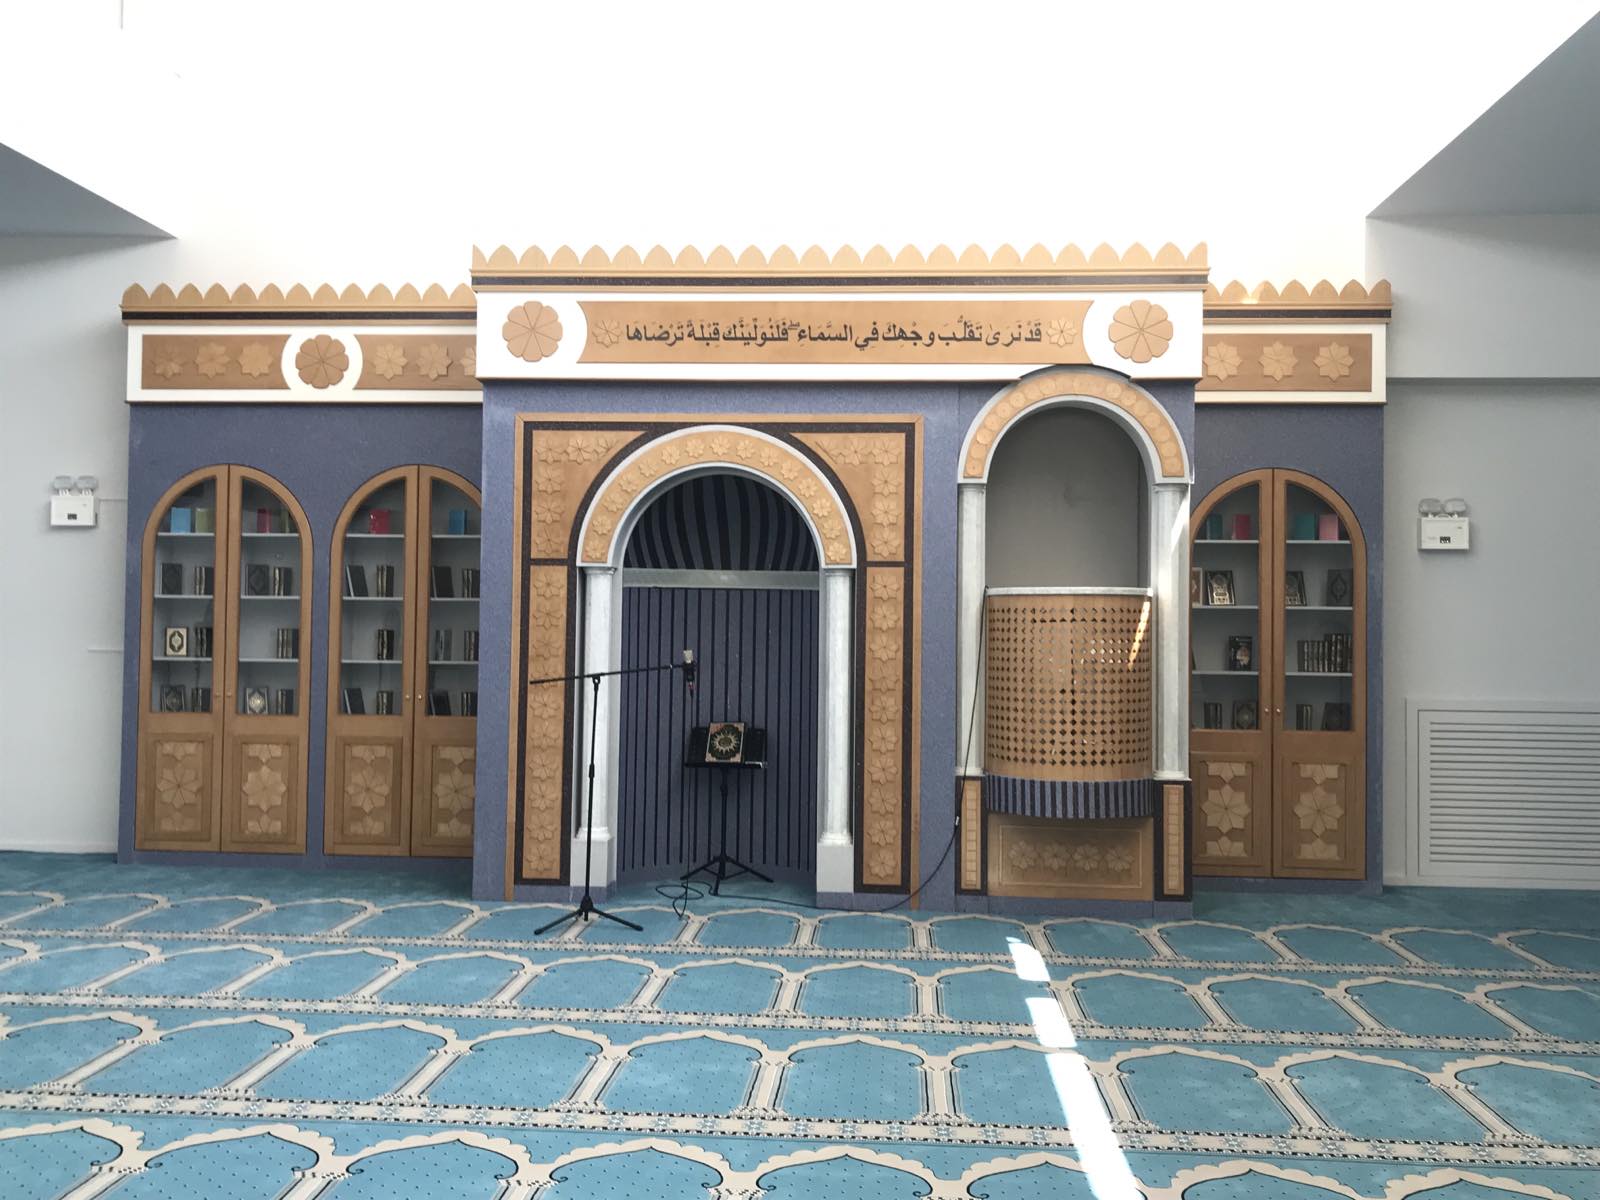 Ειδική προσευχή τελέστηκε στο τζαμί του Βοτανικού για να βρέξει σύντομα και να σβήσουν οι φωτιές